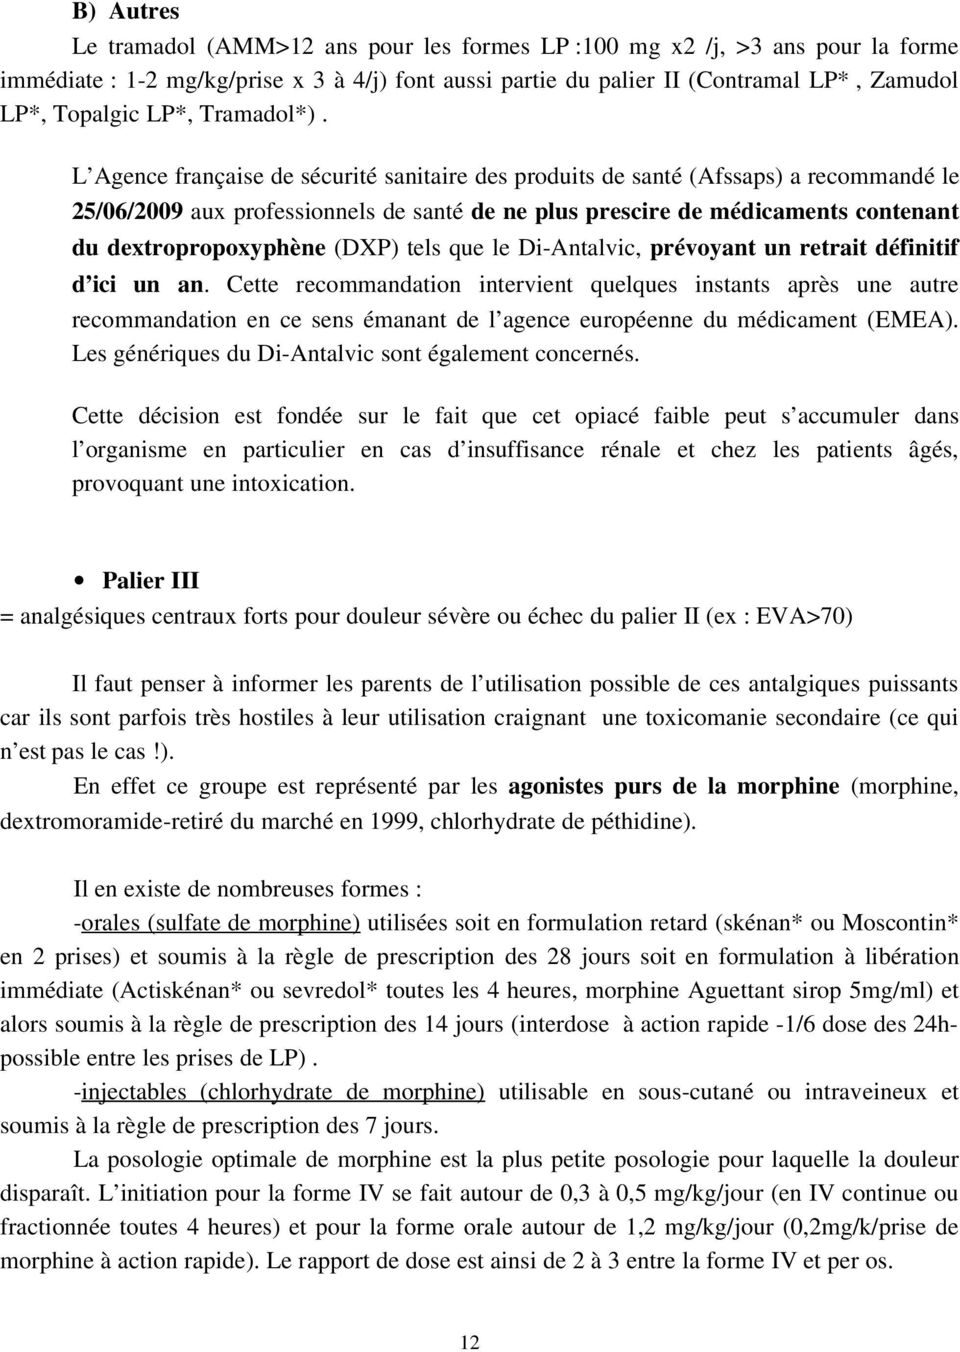 L Agence française de sécurité sanitaire des produits de santé (Afssaps) a recommandé le 25/06/2009 aux professionnels de santé de ne plus prescire de médicaments contenant du dextropropoxyphène